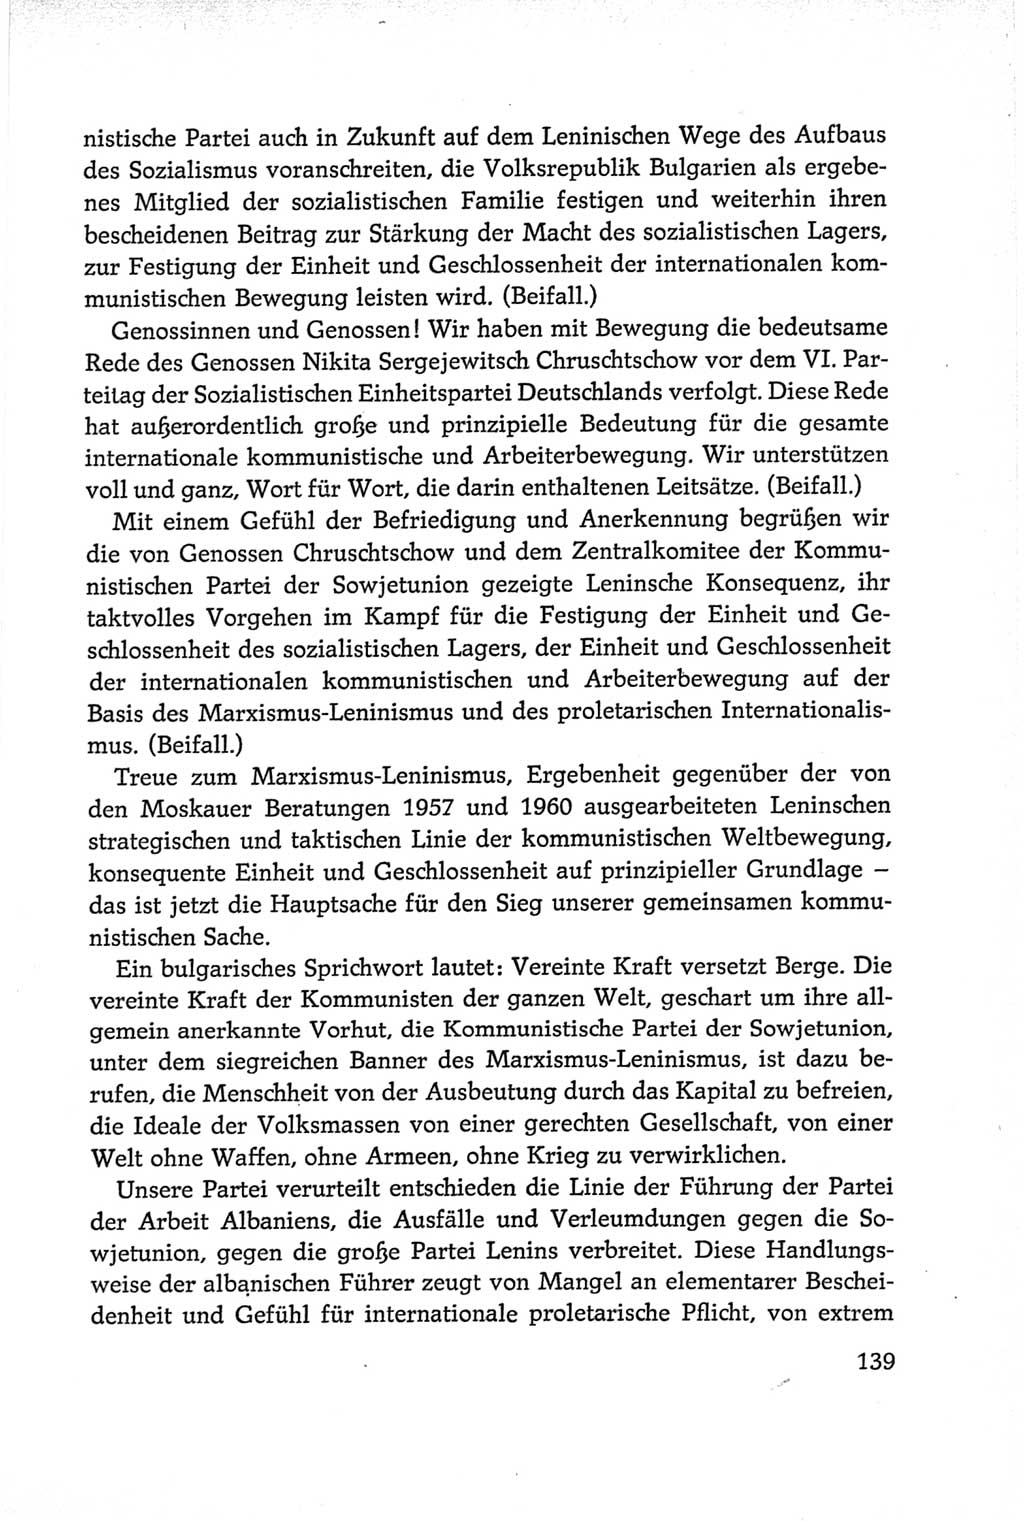 Protokoll der Verhandlungen des Ⅵ. Parteitages der Sozialistischen Einheitspartei Deutschlands (SED) [Deutsche Demokratische Republik (DDR)] 1963, Band Ⅱ, Seite 139 (Prot. Verh. Ⅵ. PT SED DDR 1963, Bd. Ⅱ, S. 139)